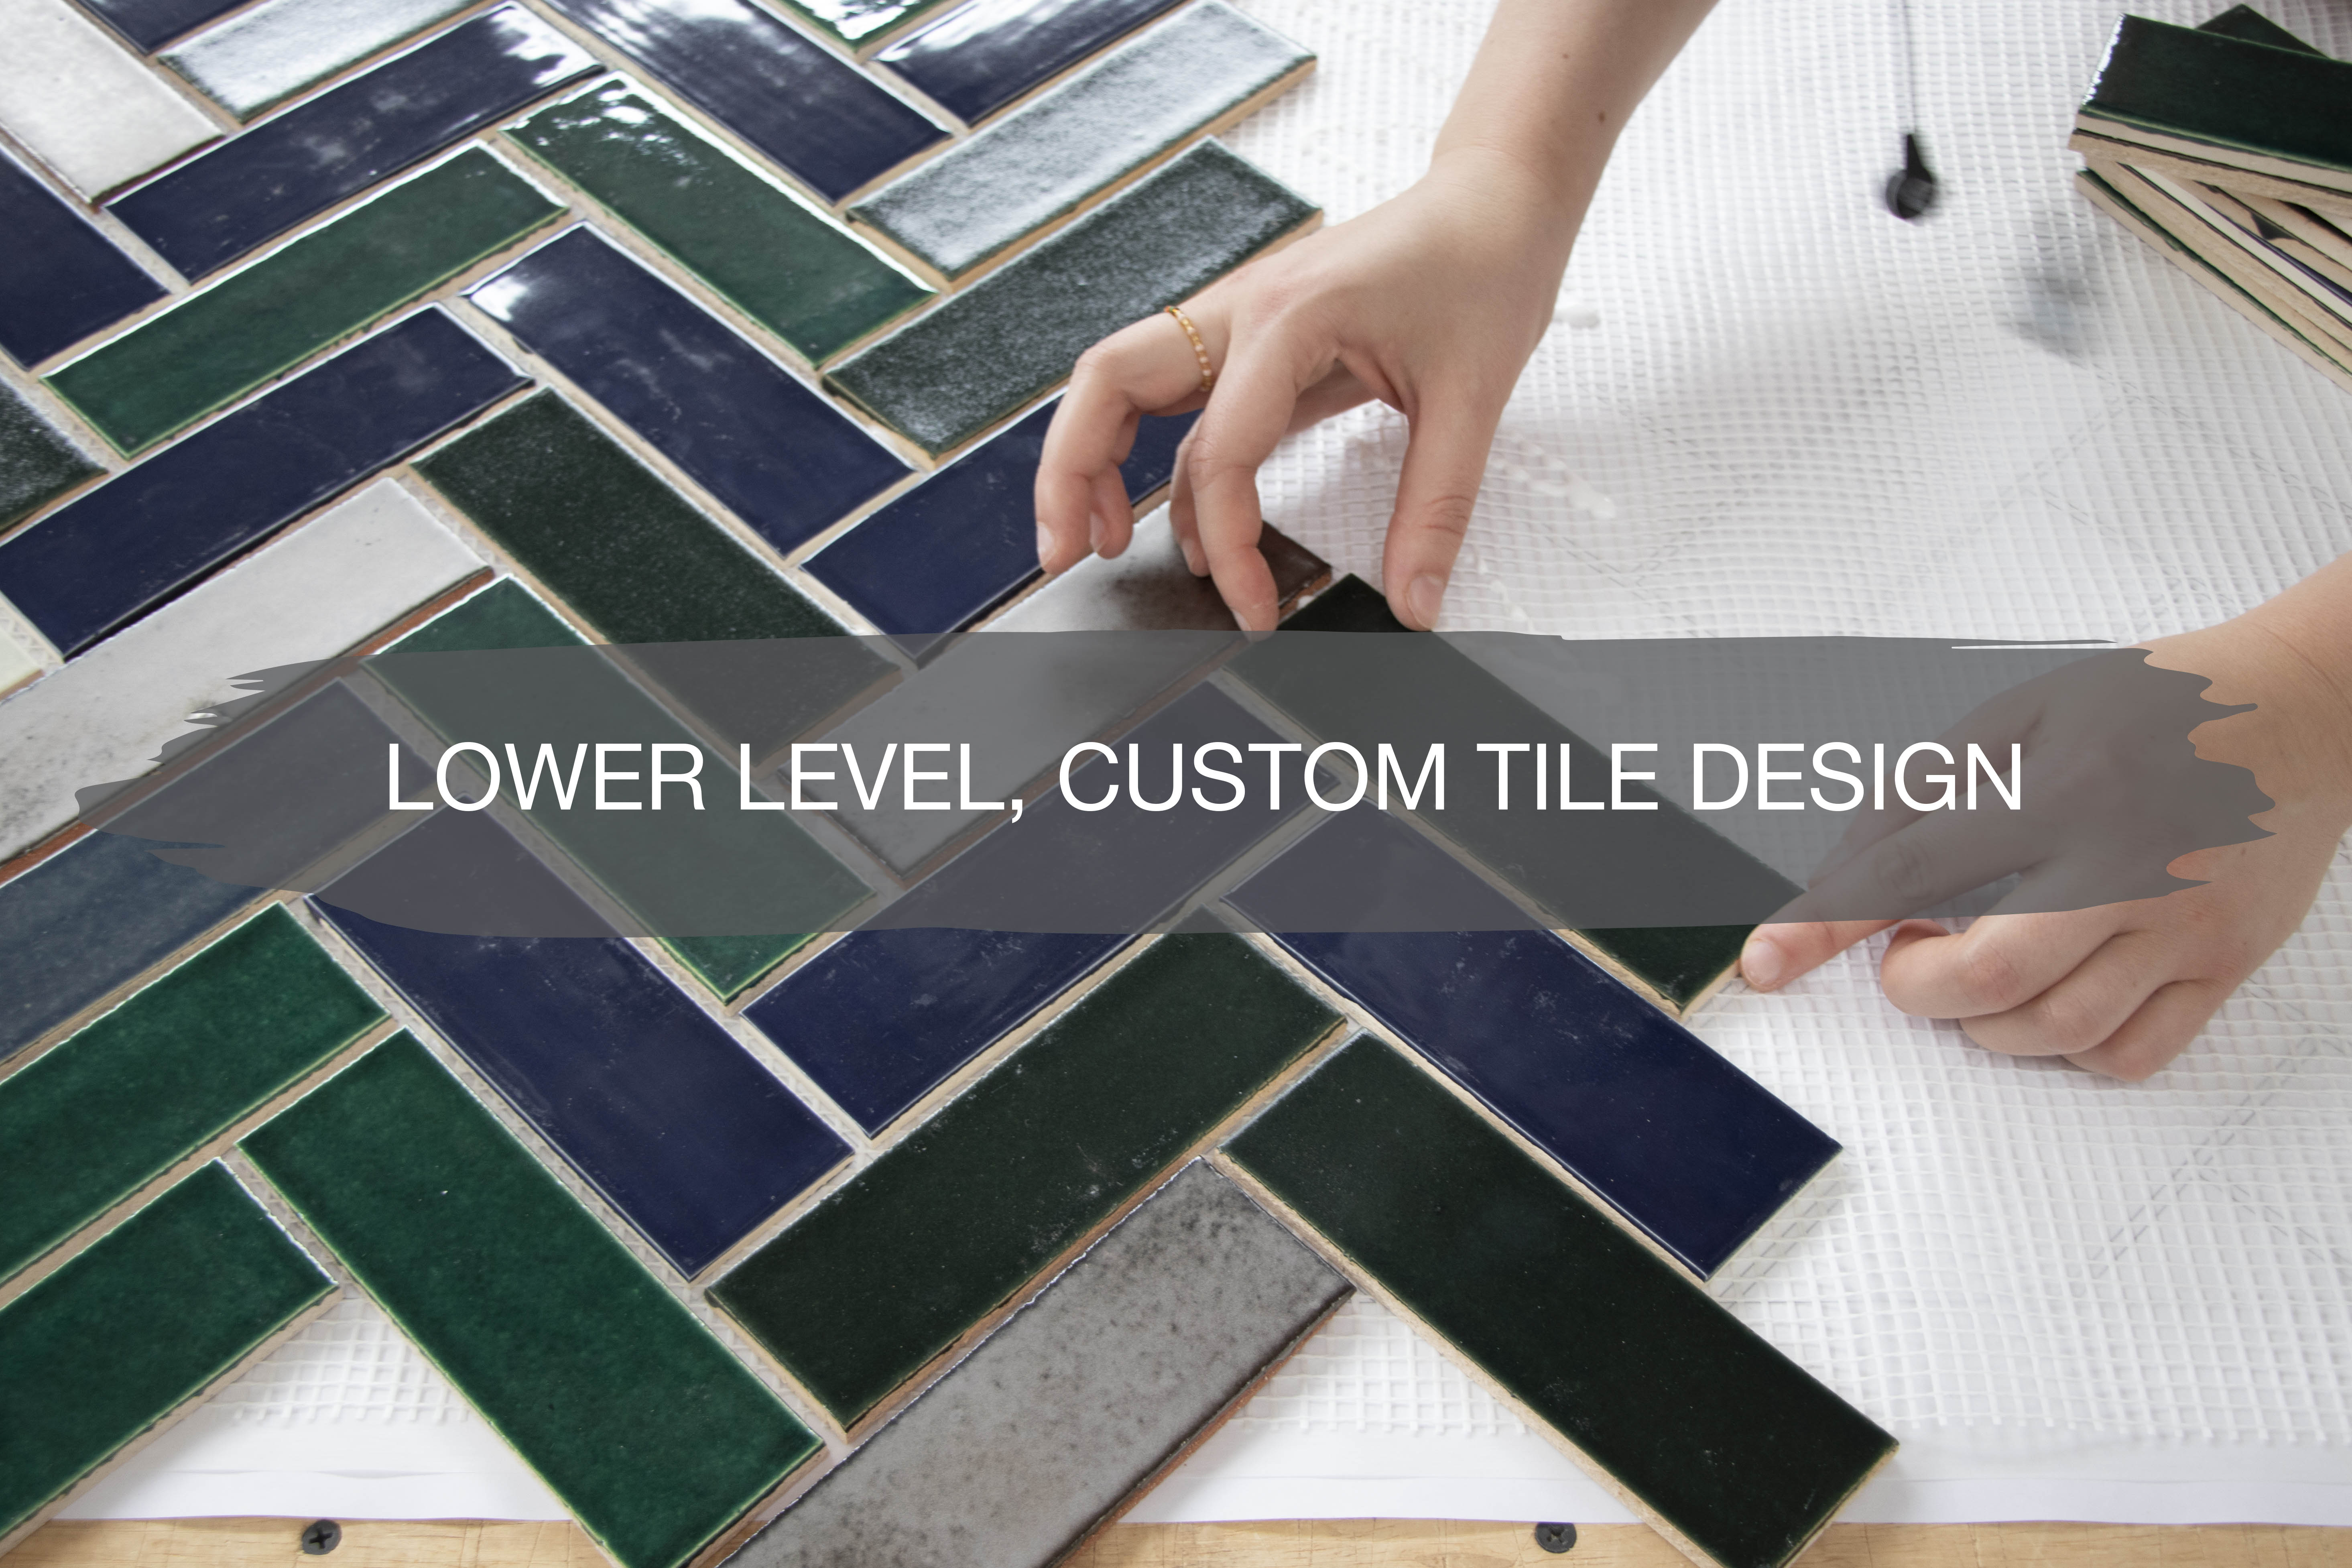 Our Lower Level, Custom Tile Design 1